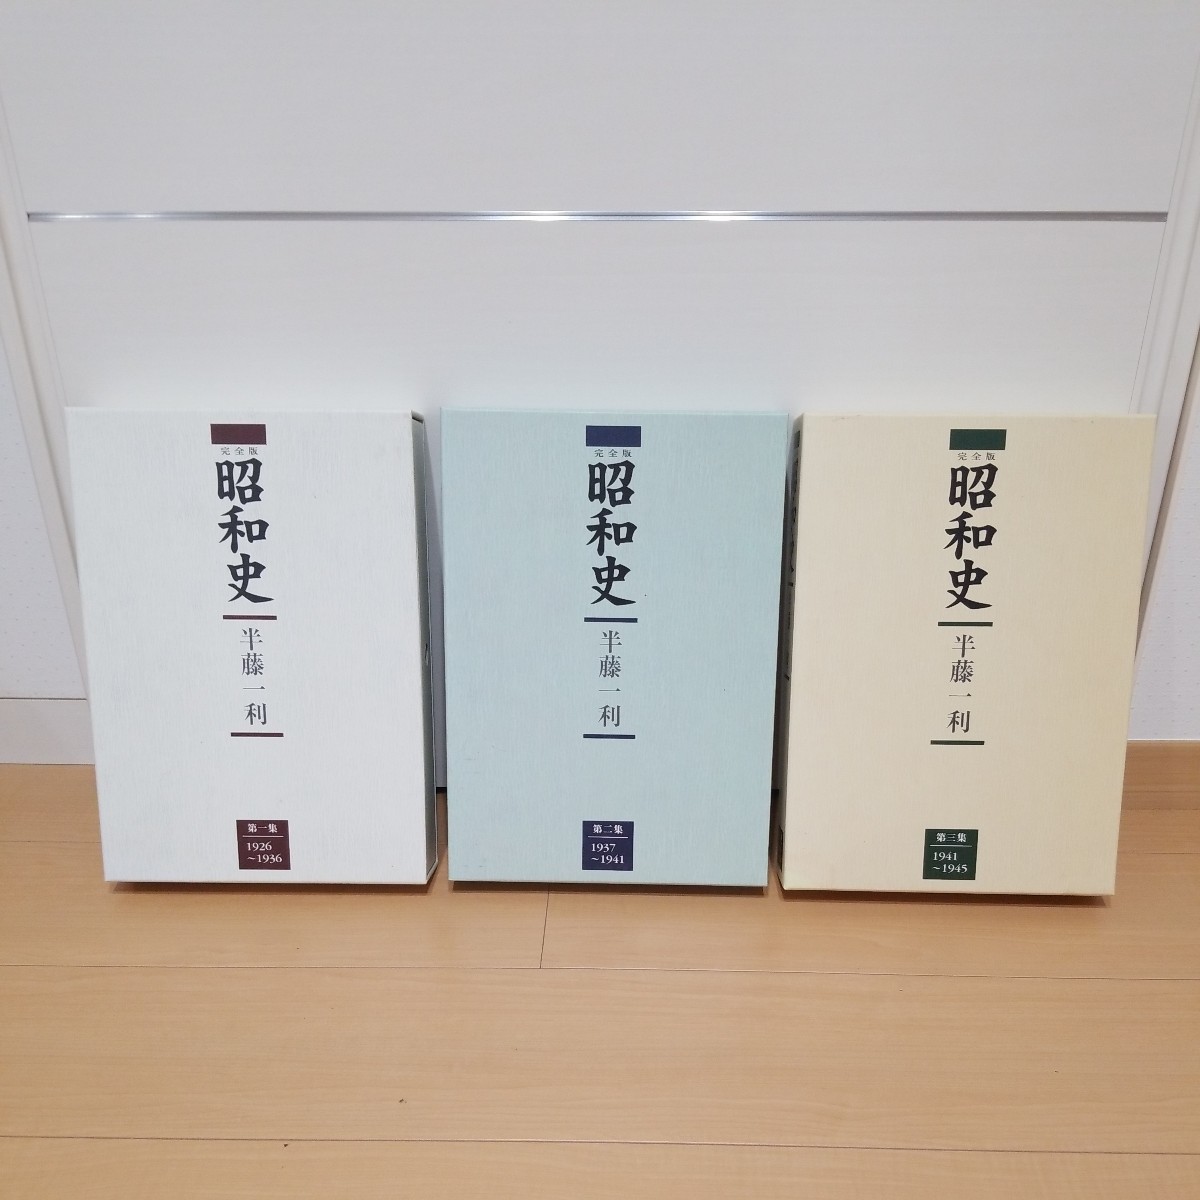  совершенно версия Showa история первый сборник второй сборник третий сборник половина глициния один выгода CD18 шт. комплект 